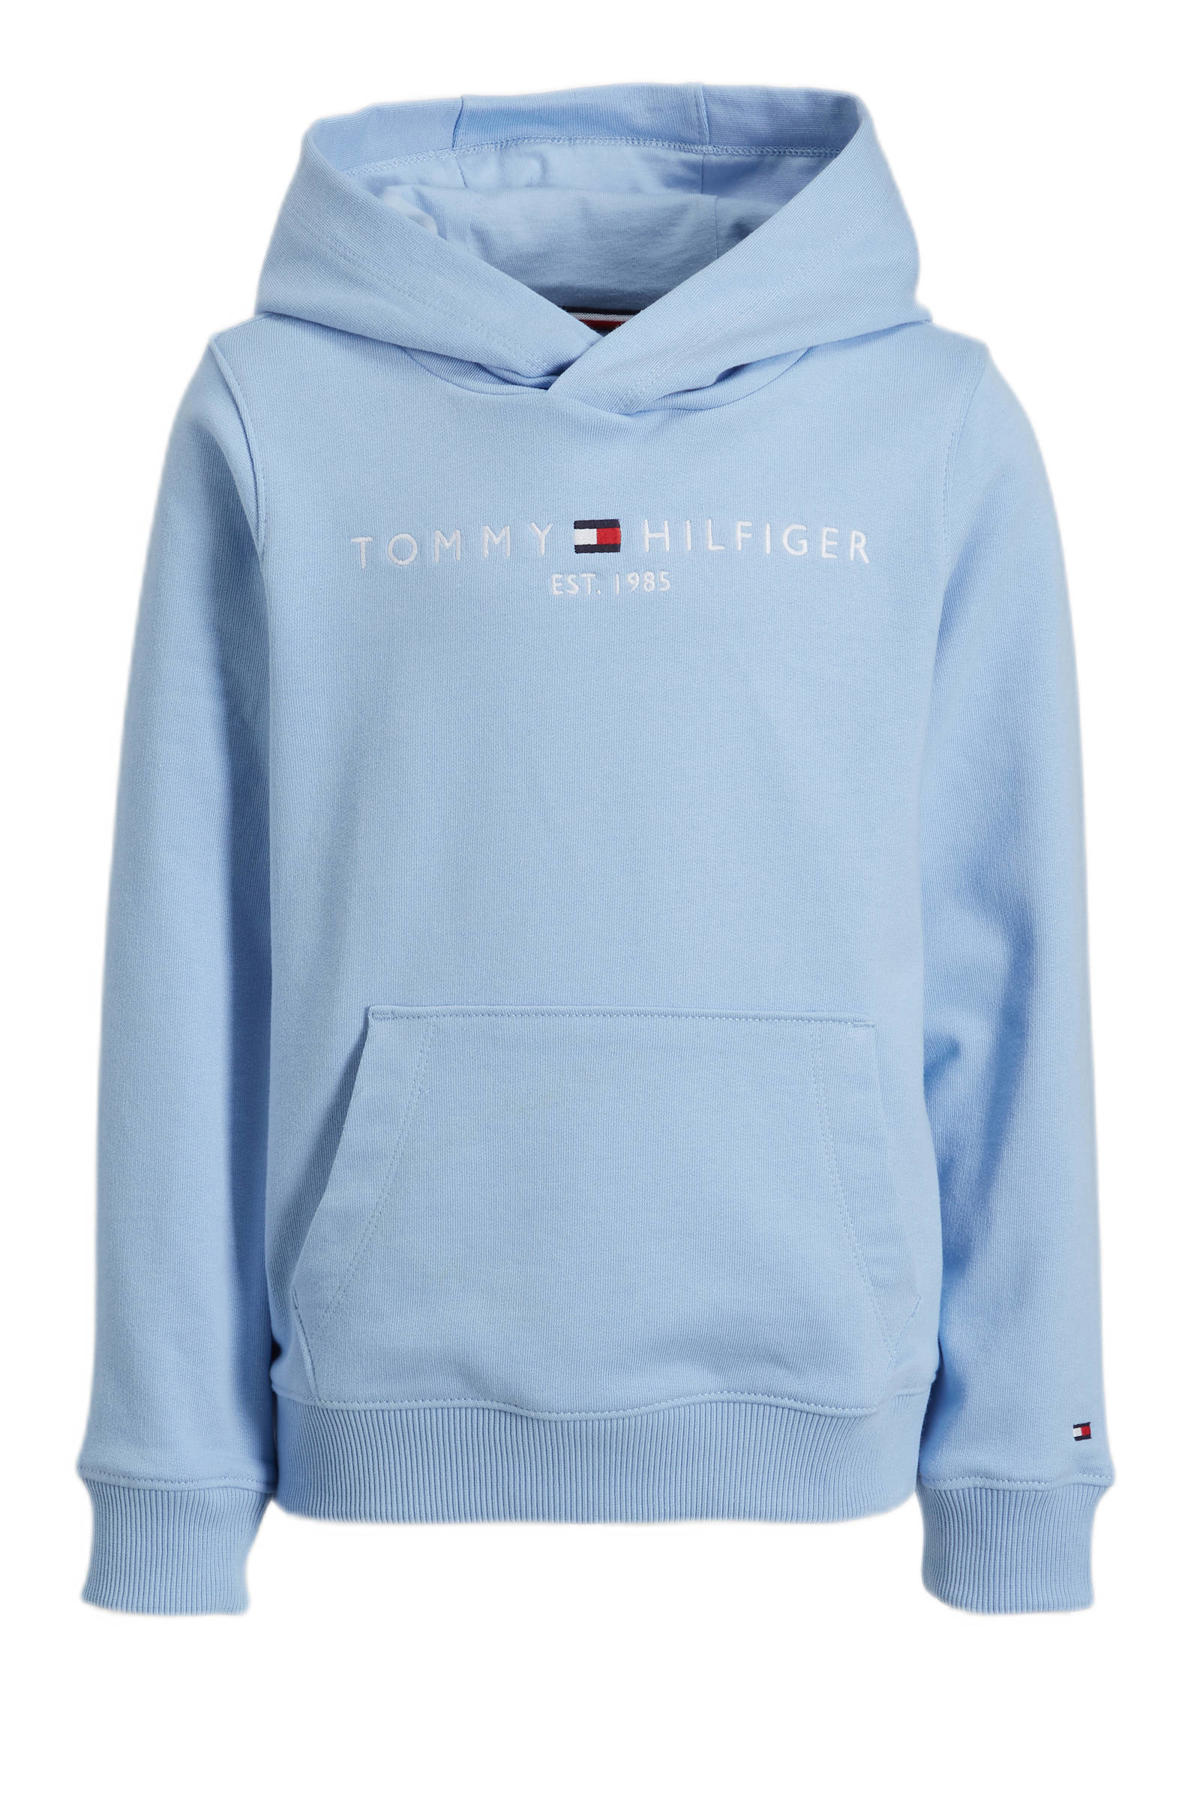 Weekendtas uitstulping slecht Tommy Hilfiger hoodie met logo lichtblauw | kleertjes.com